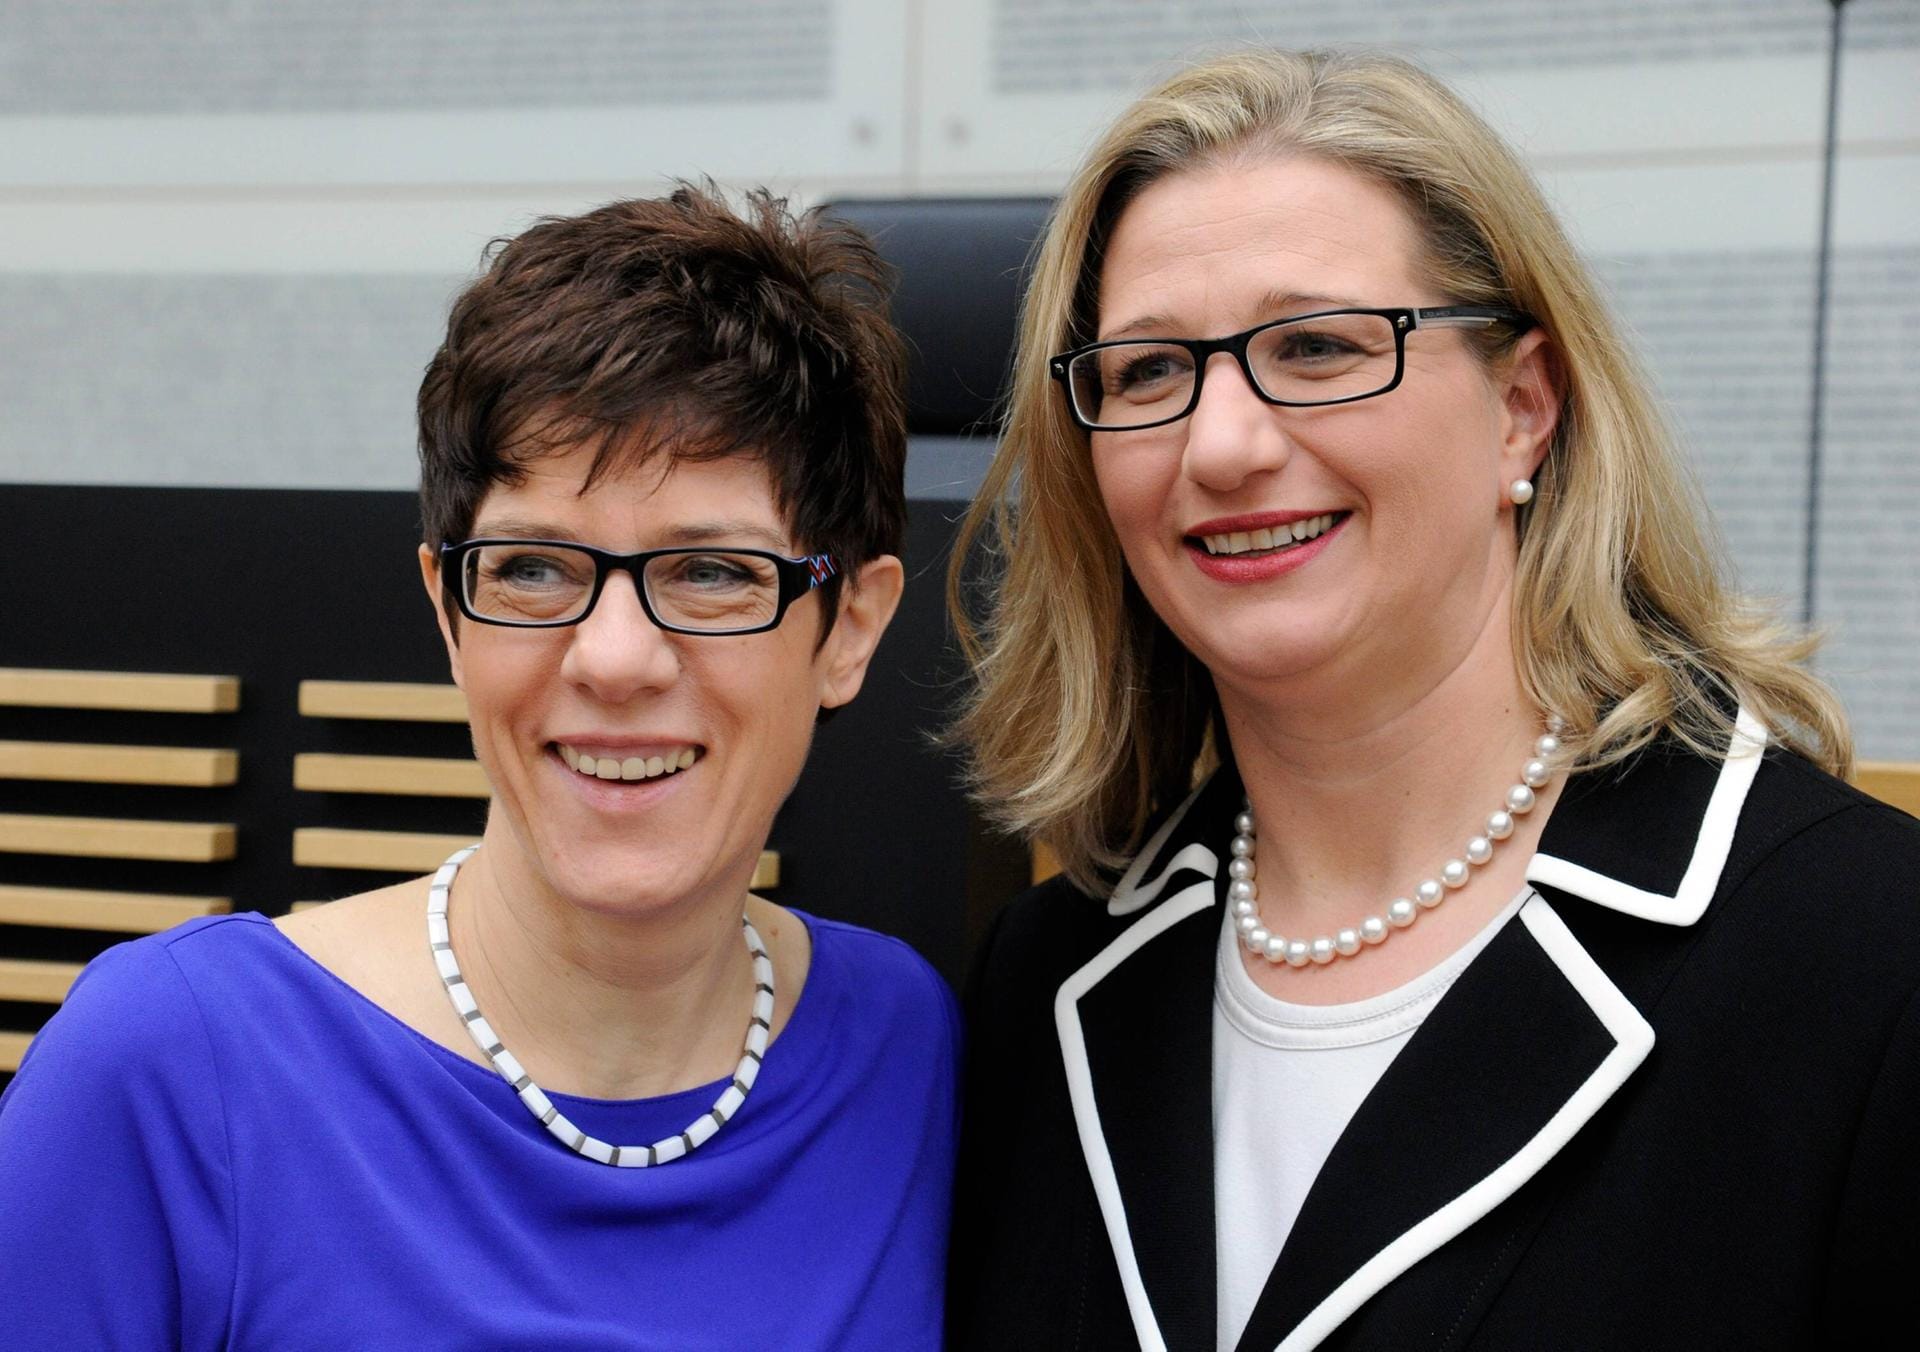 Januar 2014: Rehlinger (r.) übernimmt 2014 als Nachfolgerin von Heiko Maas die Leitung im saarländischen Wirtschaftsministerium und wird zur Stellvertreterin der damaligen Ministerpräsidentin Annegret Kramp-Karrenbauer (l., CDU).